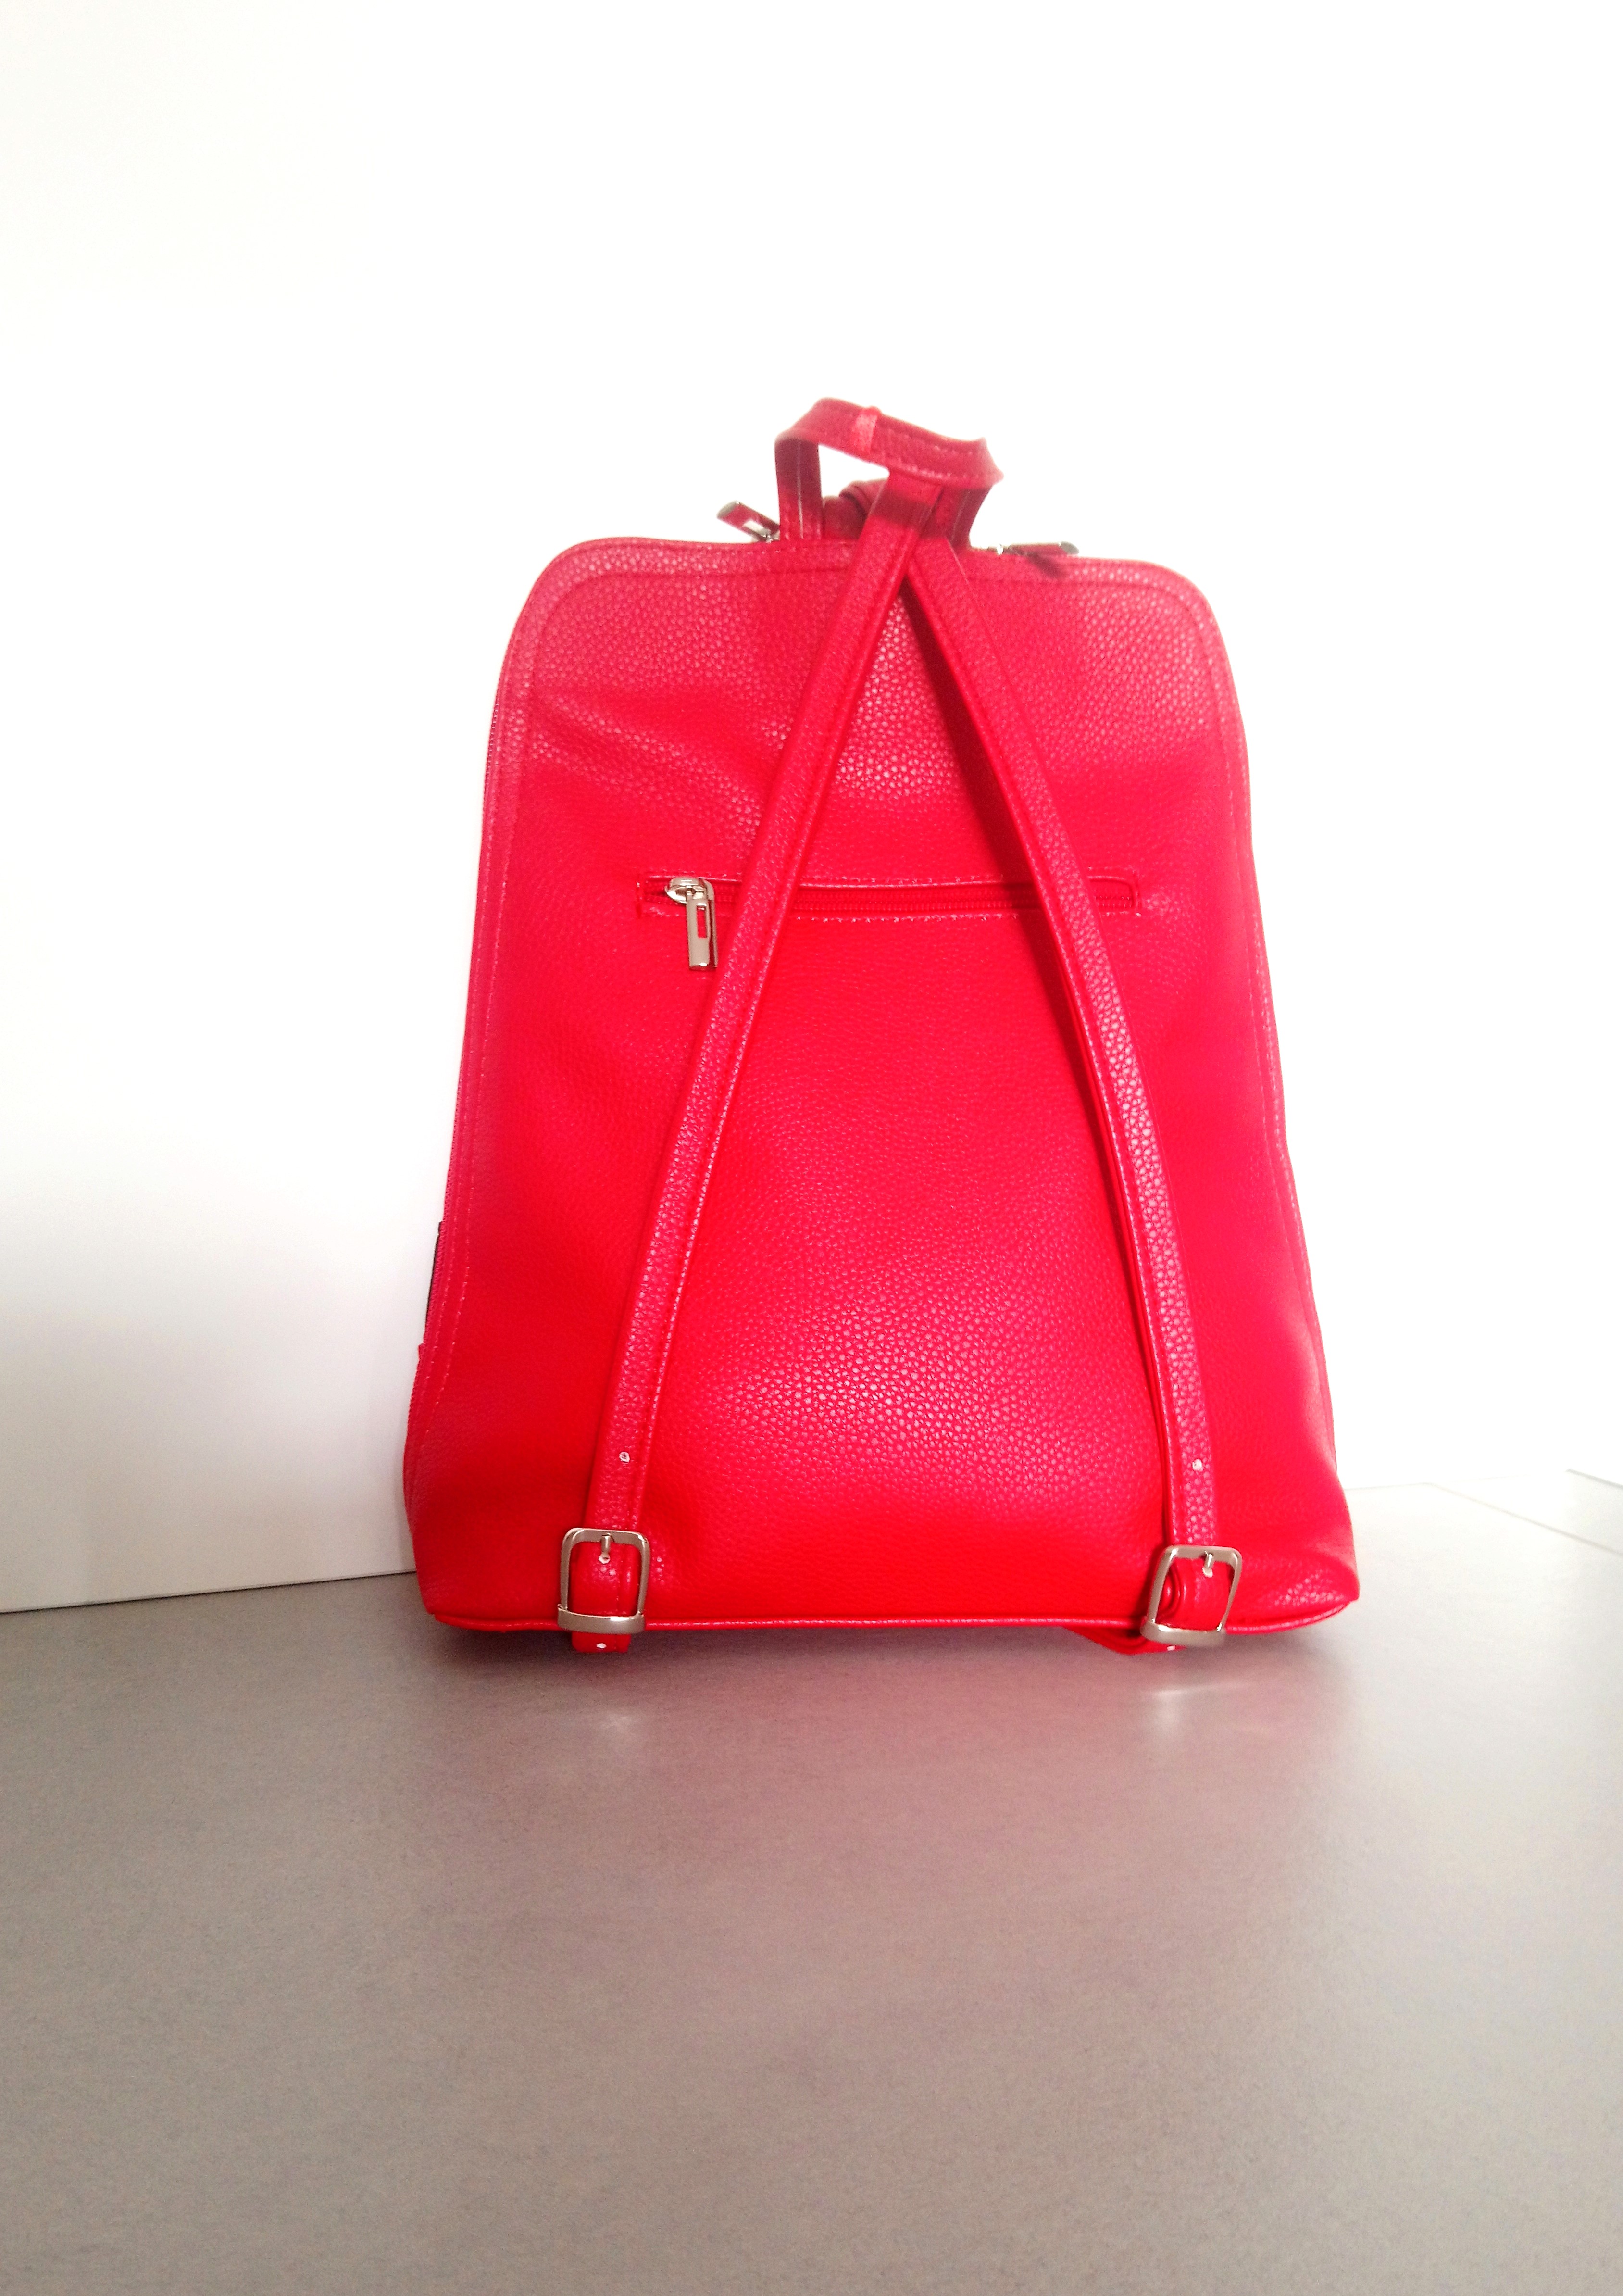 Dámsky červený ruksak MISSQ s nápisom